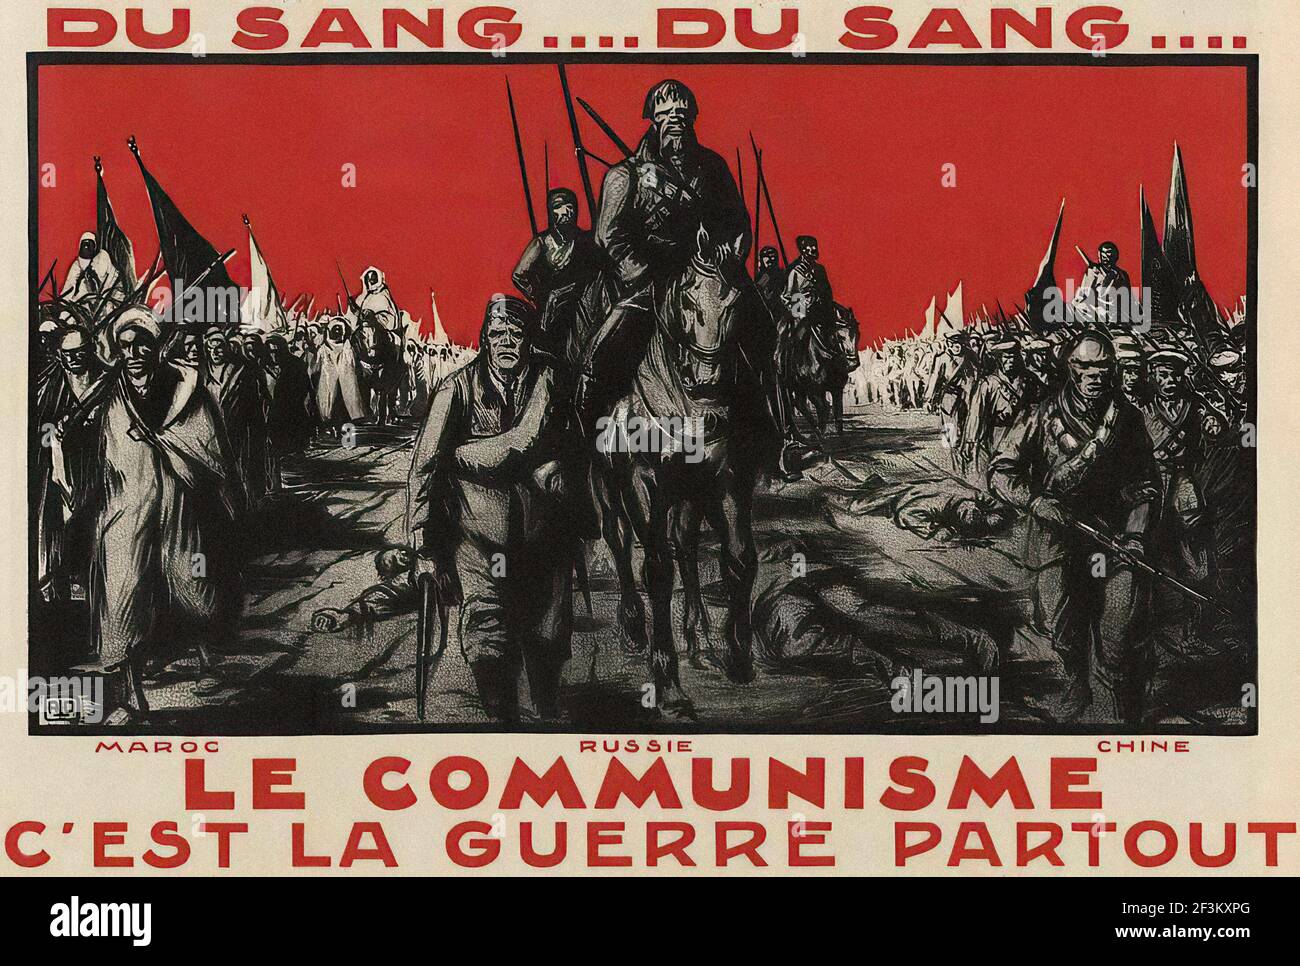 Französisches antikommunistisches Propagandaplakat. Ein Meer aus Blut ... Wo der Kommunismus zu dominieren beginnt, werden immer gnadenlose Kriege geführt - Marokko, Russland, Chi Stockfoto